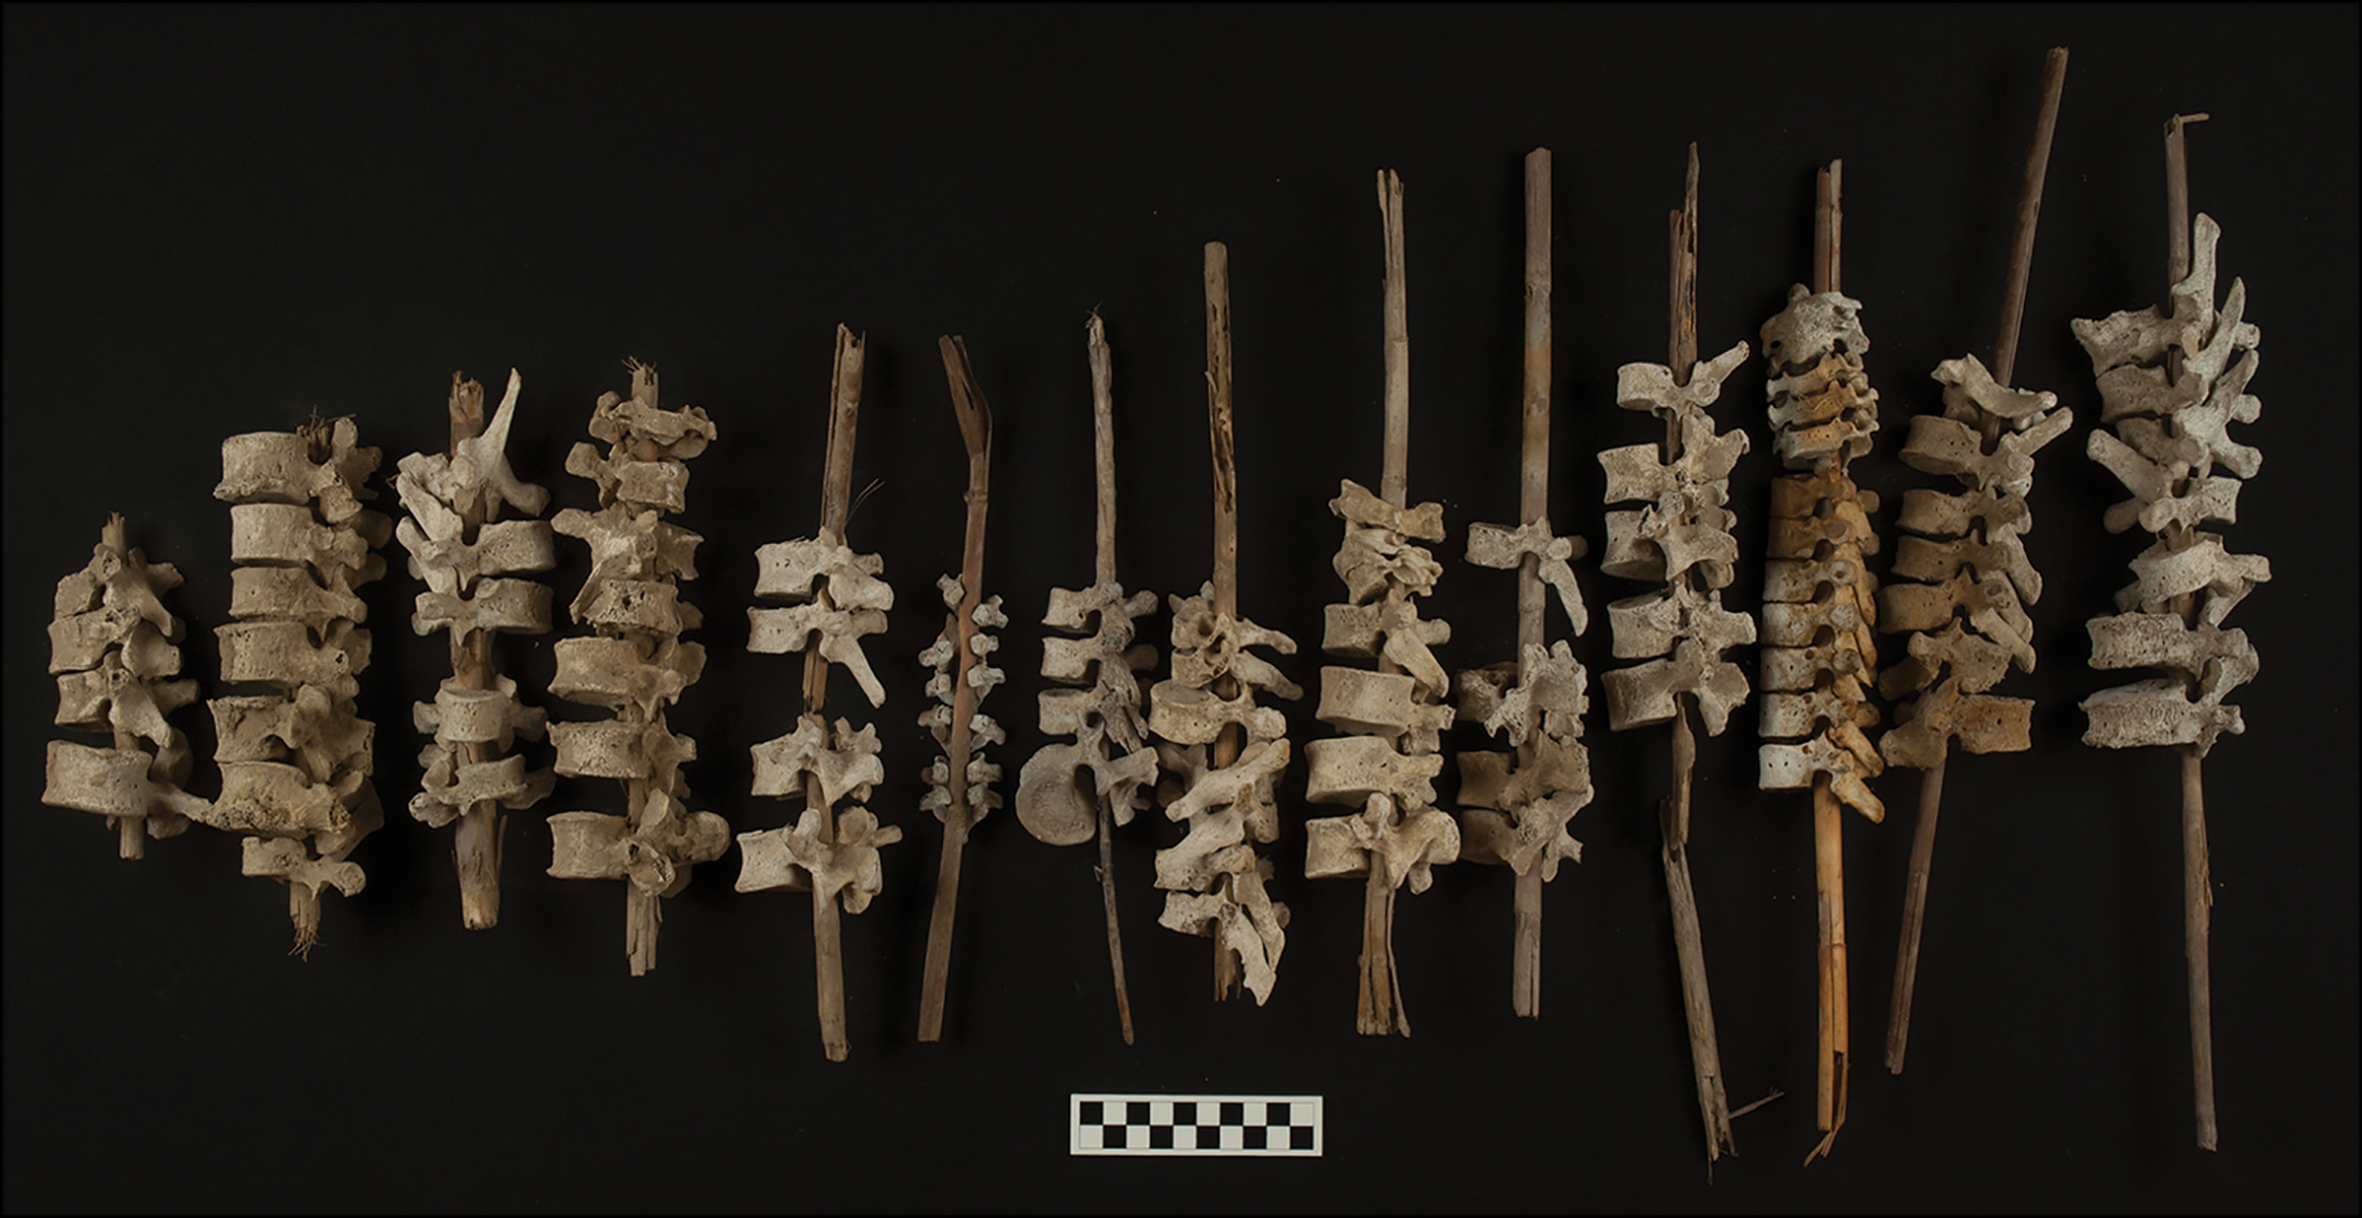 Encuentran en Perú vertebras humanas ensartadas en varas de madera